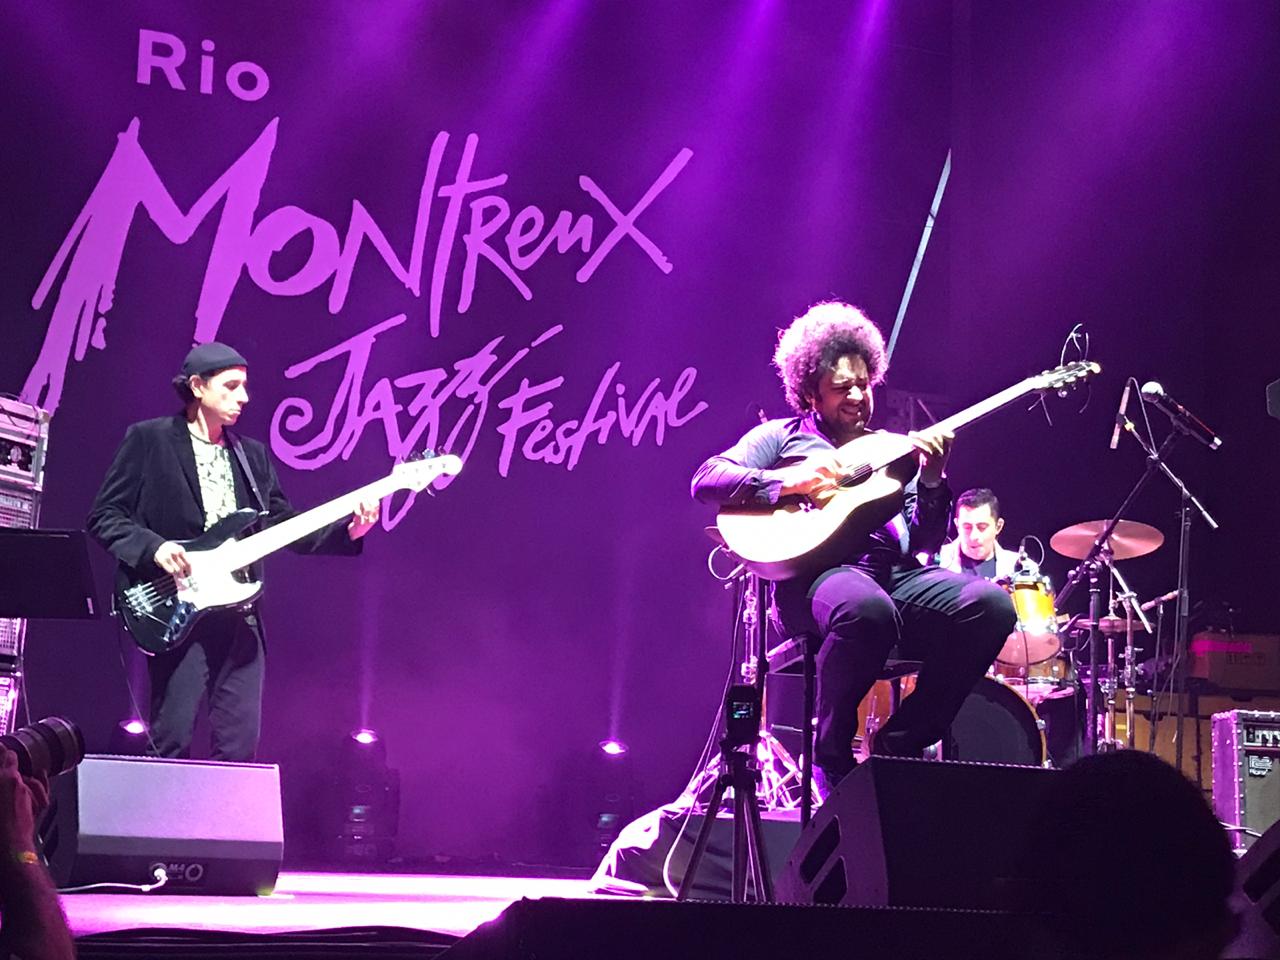 Diego Figueiredo Trio durante show no Rio Montreux Festival (Foto: Divulgação)